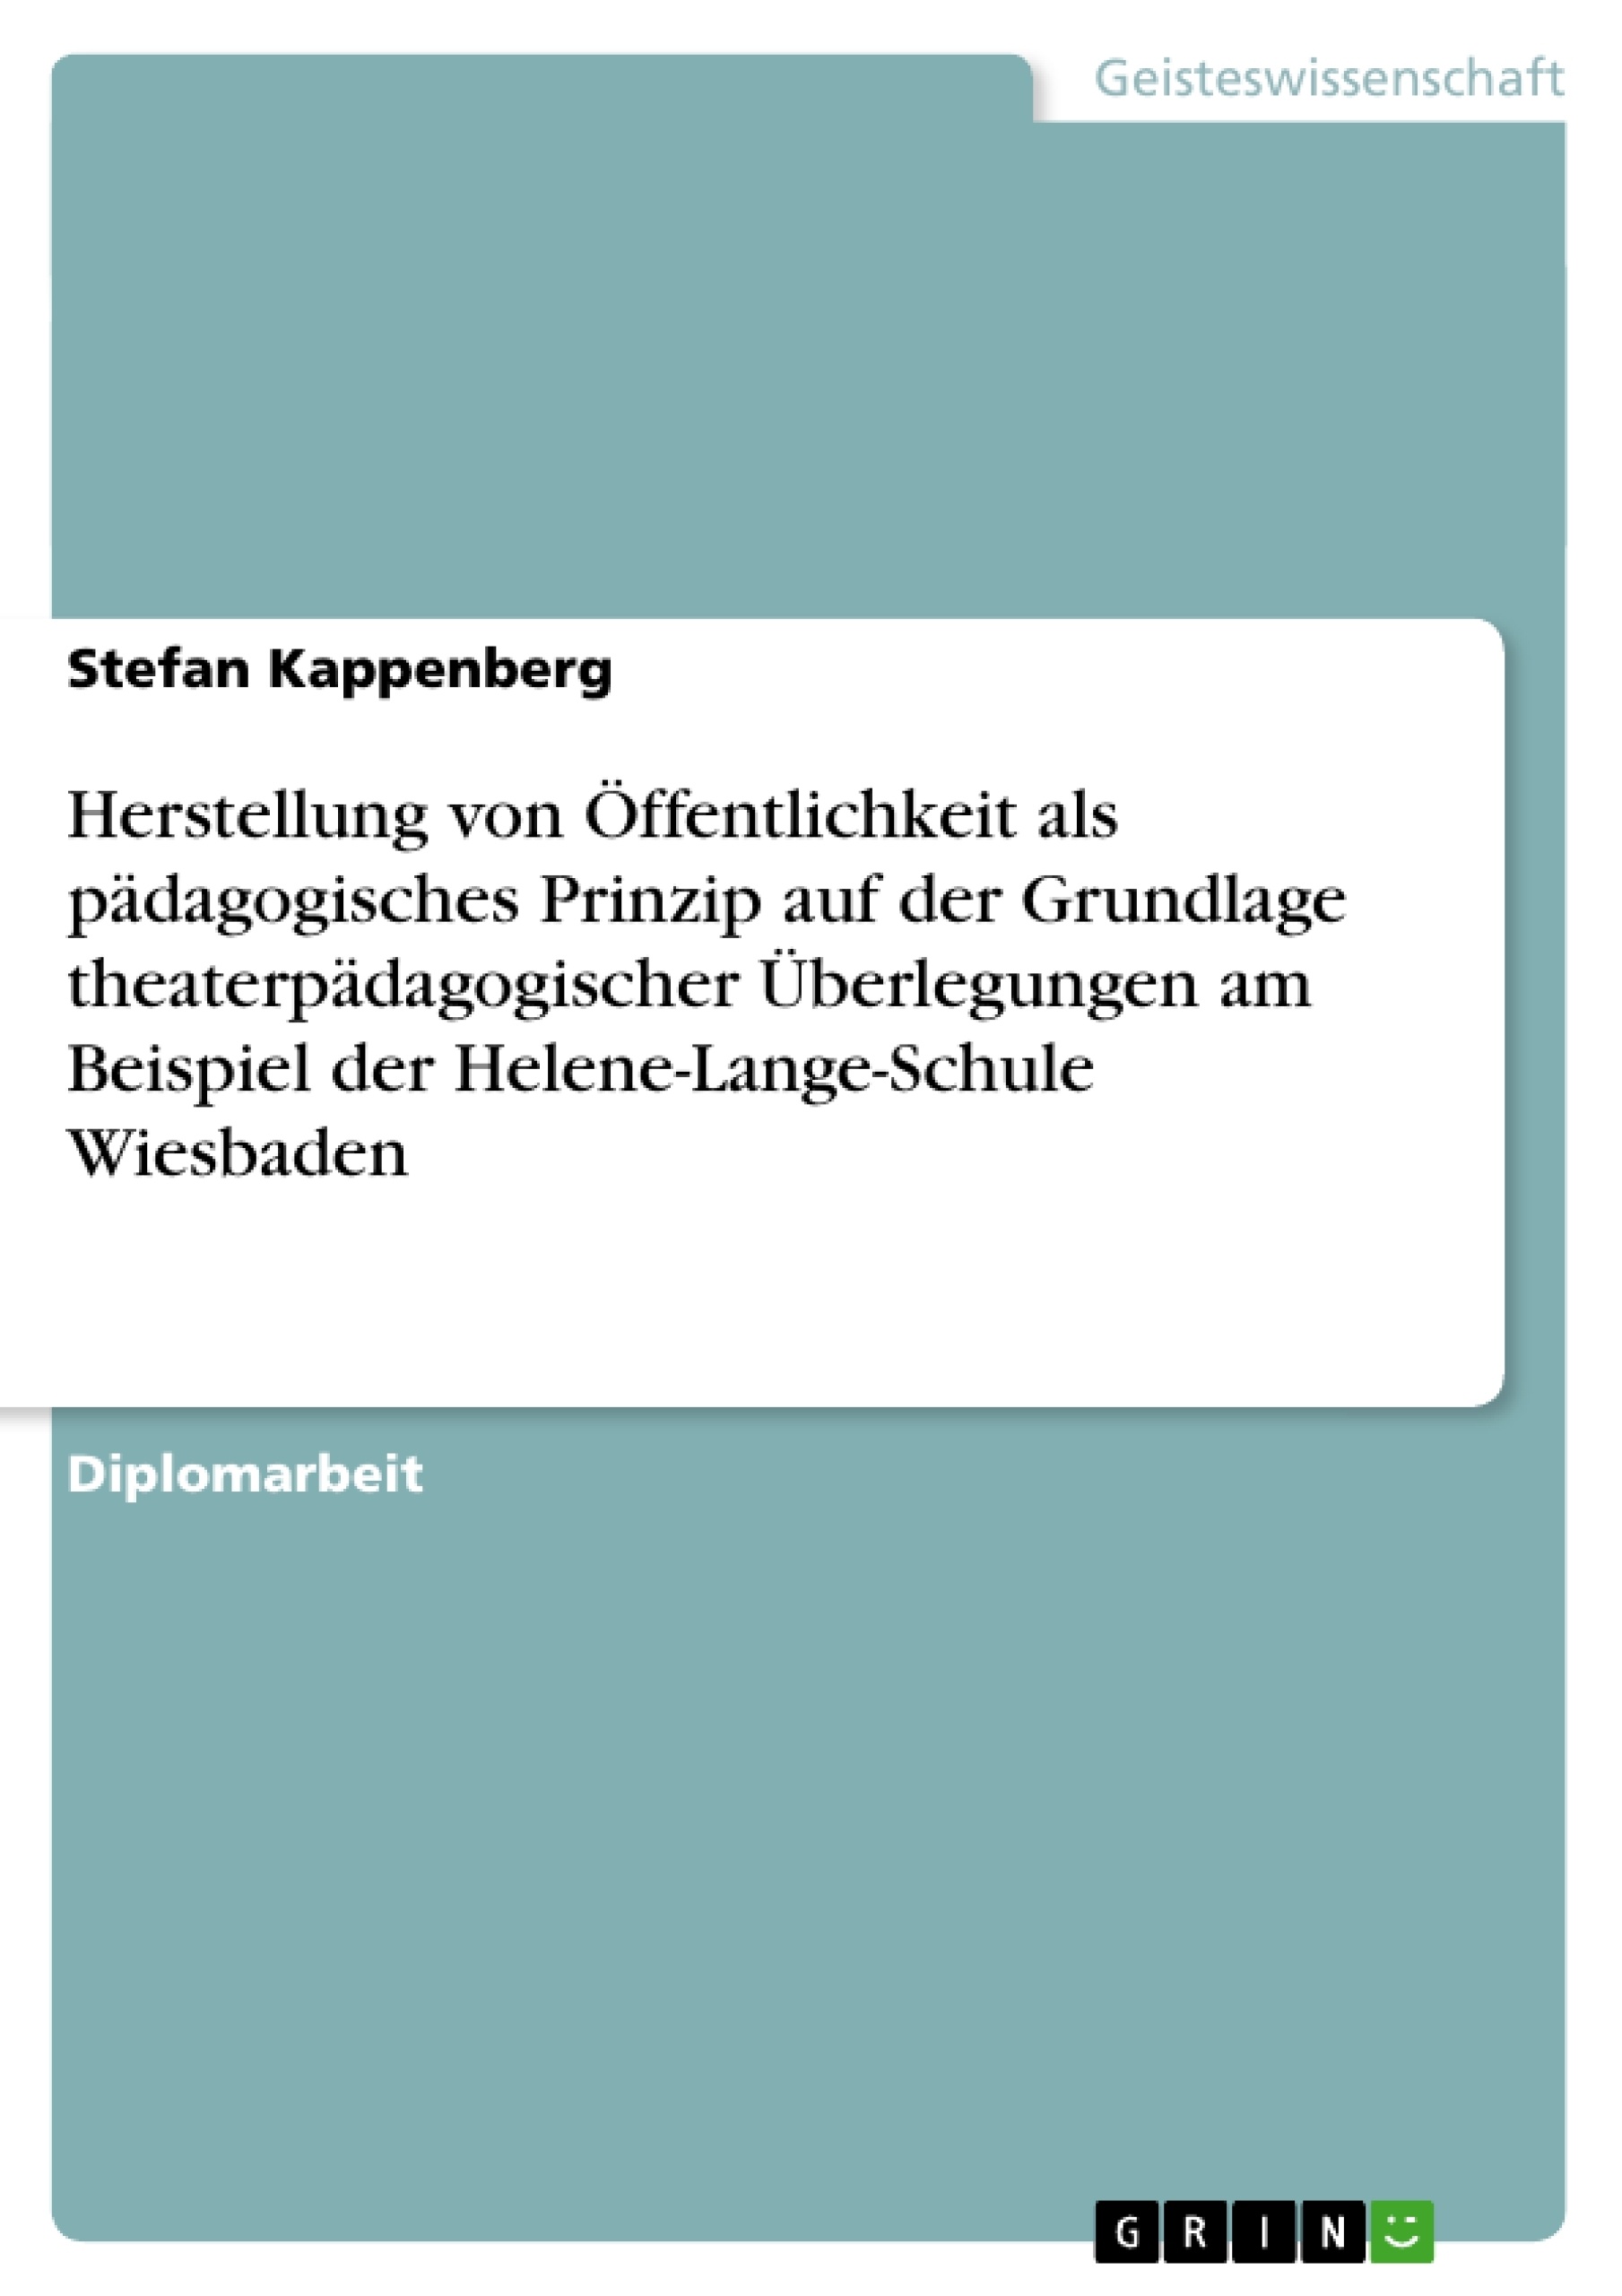 Título: Herstellung von Öffentlichkeit als pädagogisches Prinzip auf der Grundlage theaterpädagogischer Überlegungen am Beispiel der Helene-Lange-Schule Wiesbaden